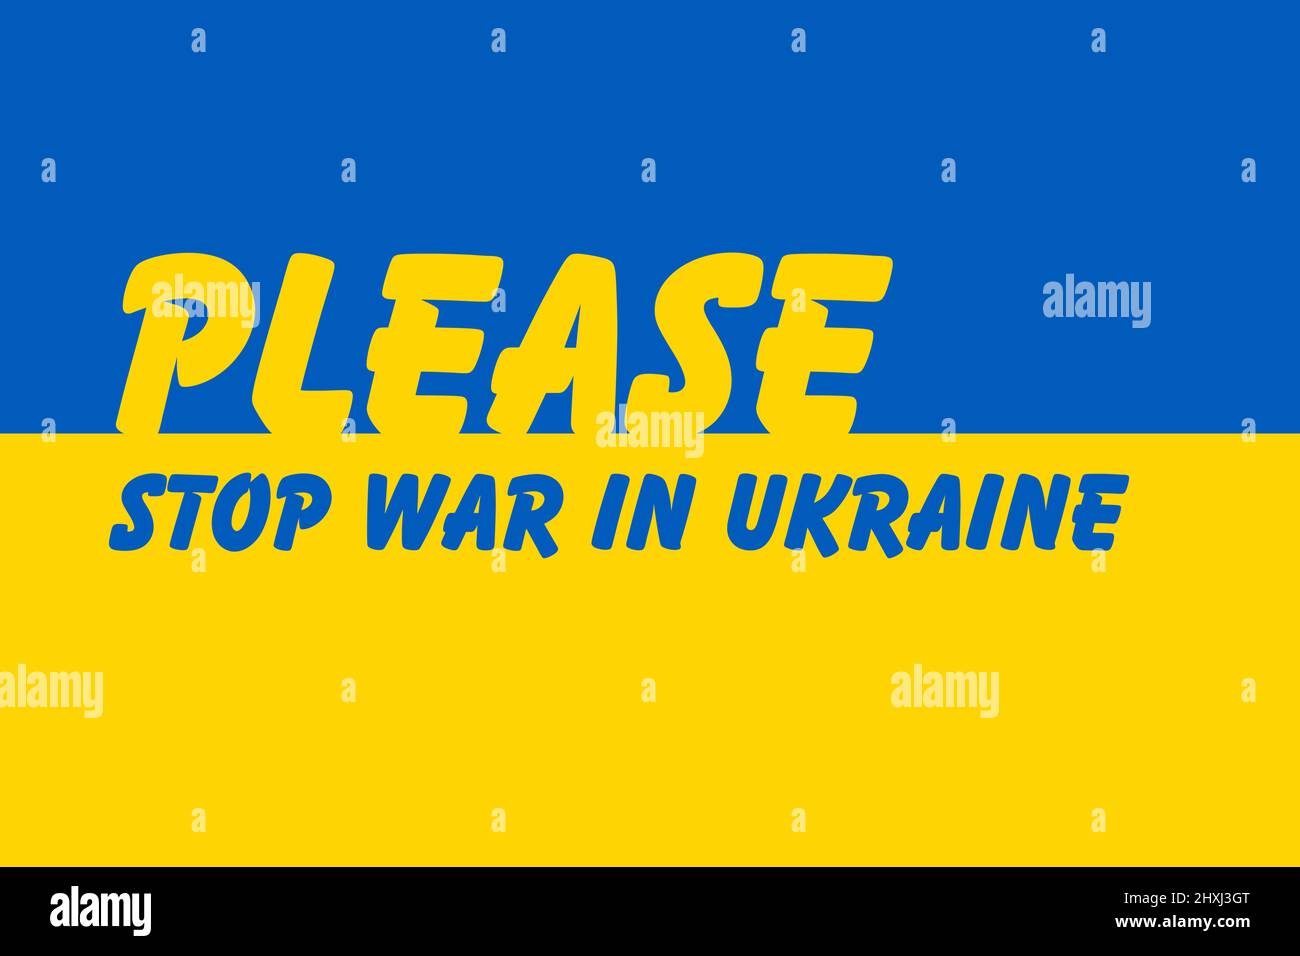 Fermare la guerra in Ucraina, vettore che attingono alla bandiera Ucraina. Vettore bandiera ucraina in dimensioni e colori originali con stop alla guerra in caratteri ucraini Illustrazione Vettoriale